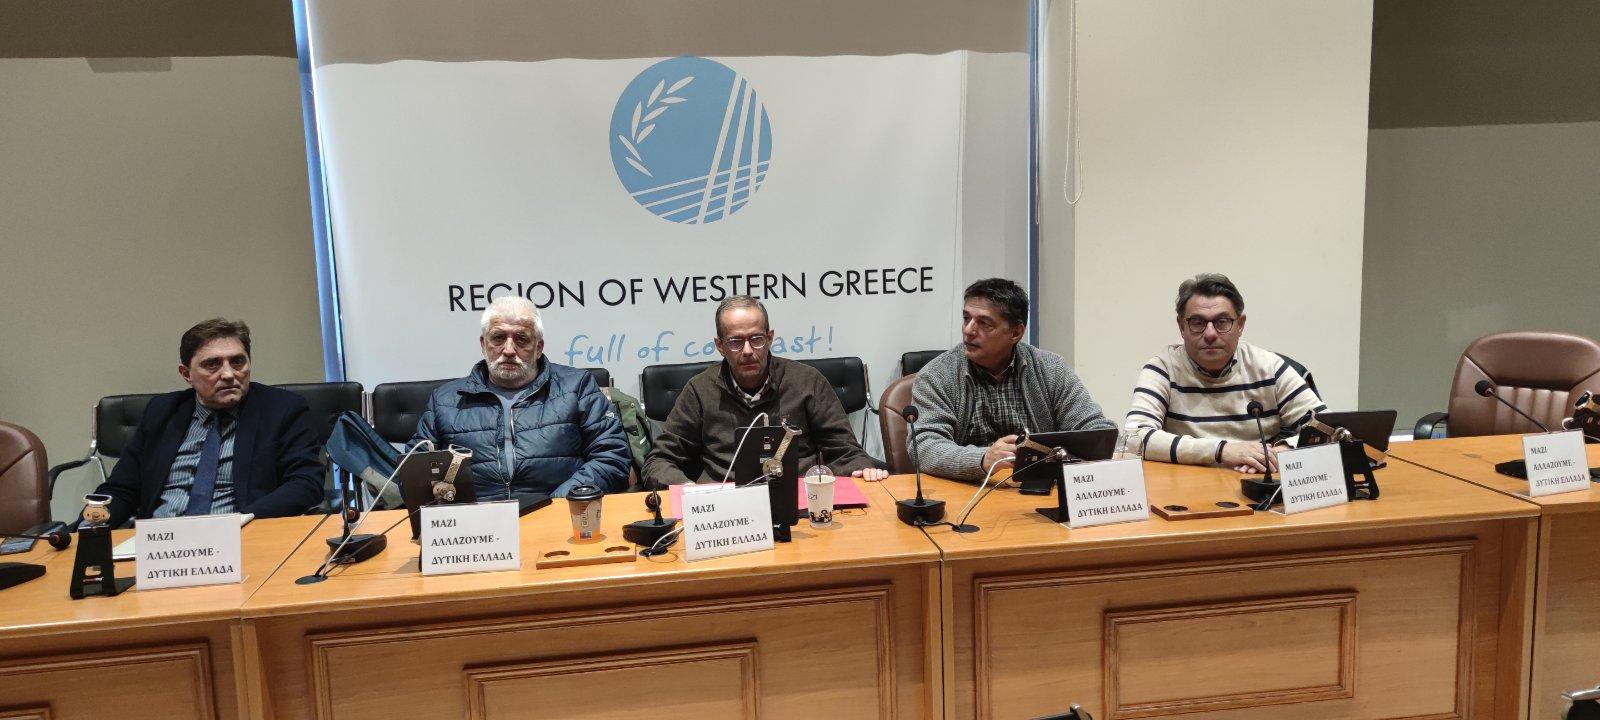 Δελτίο τύπου - «Μαζί Αλλάζουμε – Δυτική Ελλάδα»: Δασοπροστασία, αναβάθμιση Αράξου, έργα θρησκευτικού τουρισμού στη συνεδρίαση του Περιφερειακού Συμβουλίου